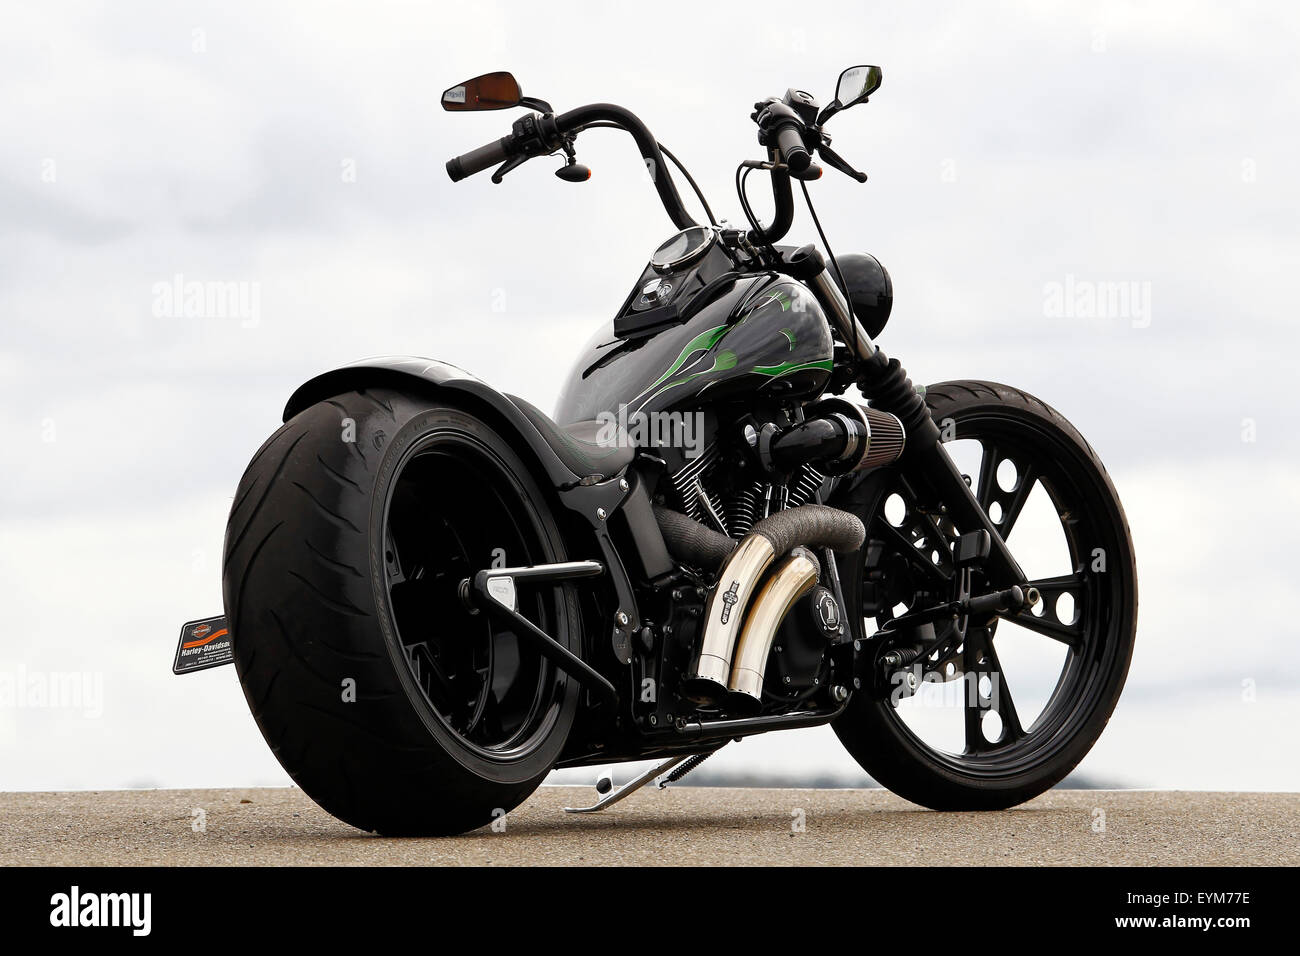 Motorrad, Stimmung Bike, Chopper, schwarz, statisch, schräg von hinten, Custom Bike auf Harley Basis, Baujahr 2011, extrem breiten Hinterreifen, Stockfoto